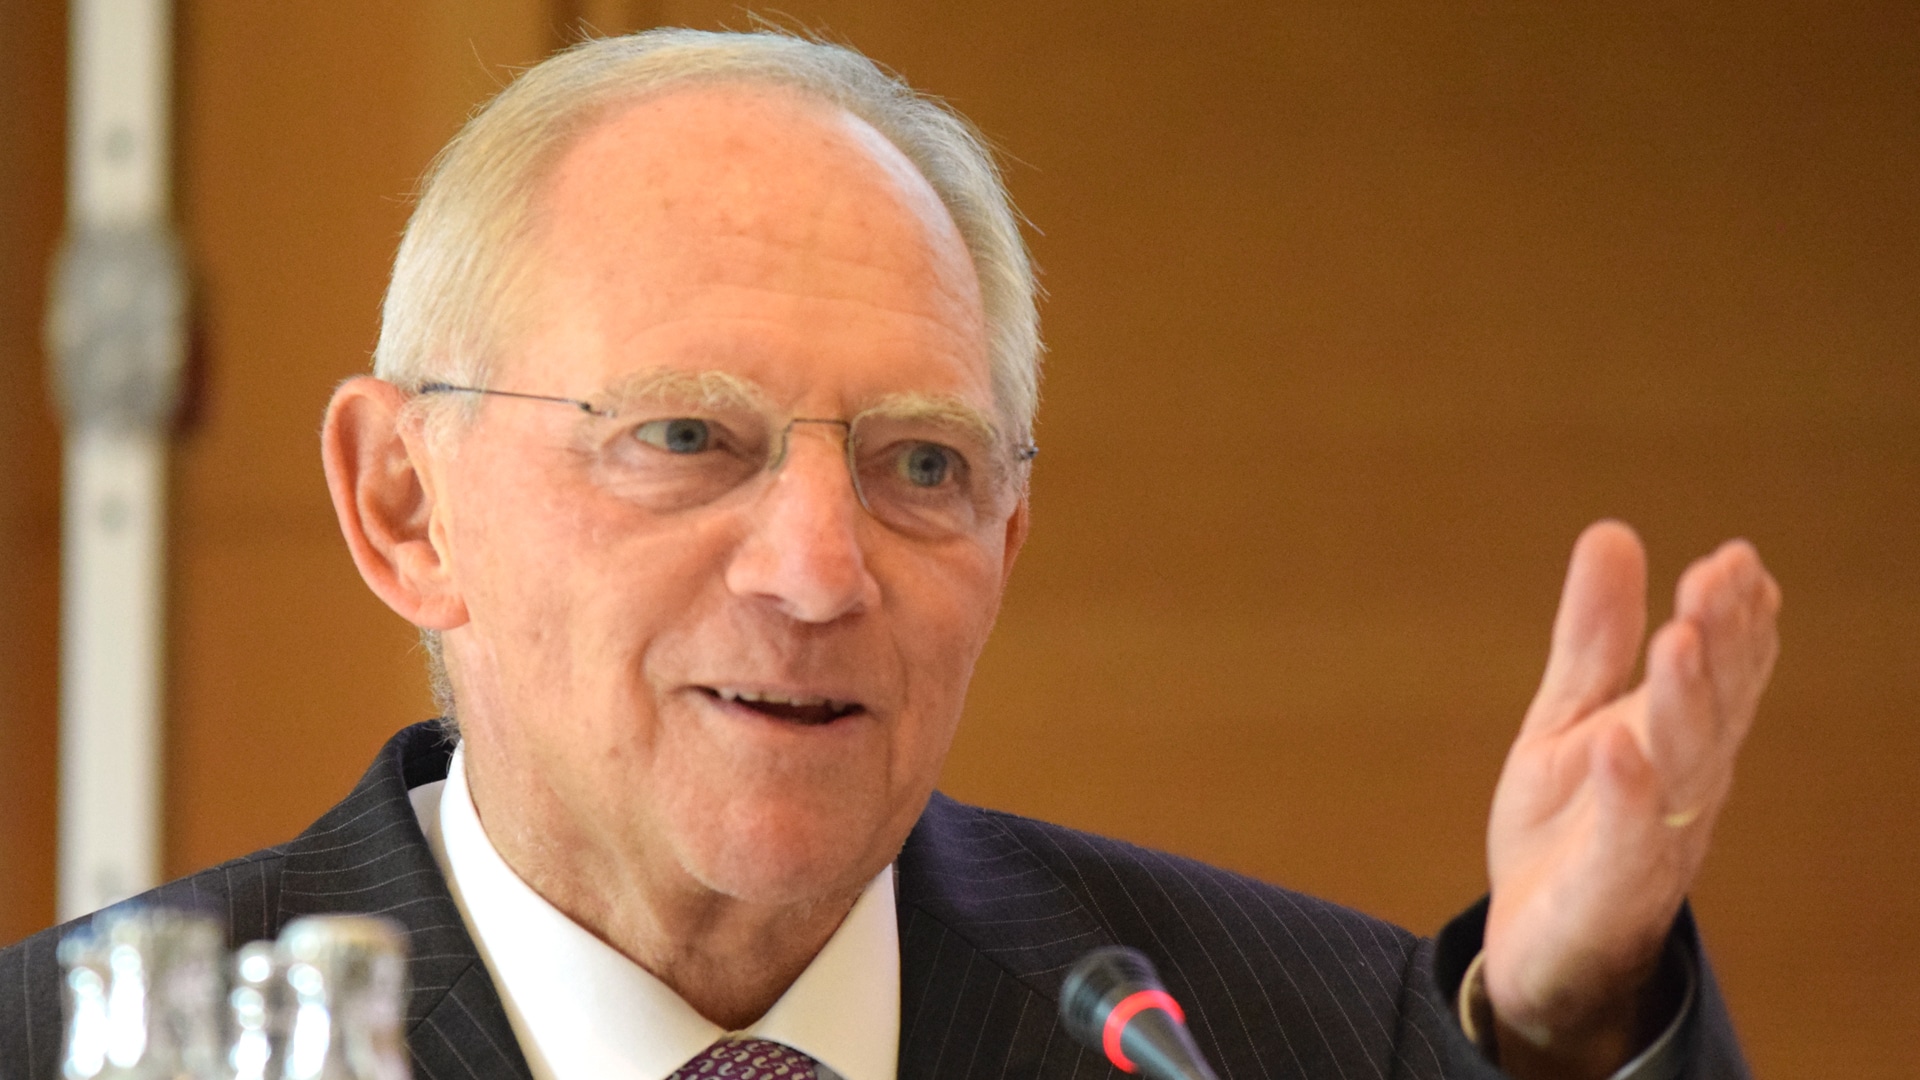 Wolfgang Schäuble sieht die Demokratie gefährdet, wenn - auch abwegige - Meinungen in der Öffentlichkeit verhindert werden